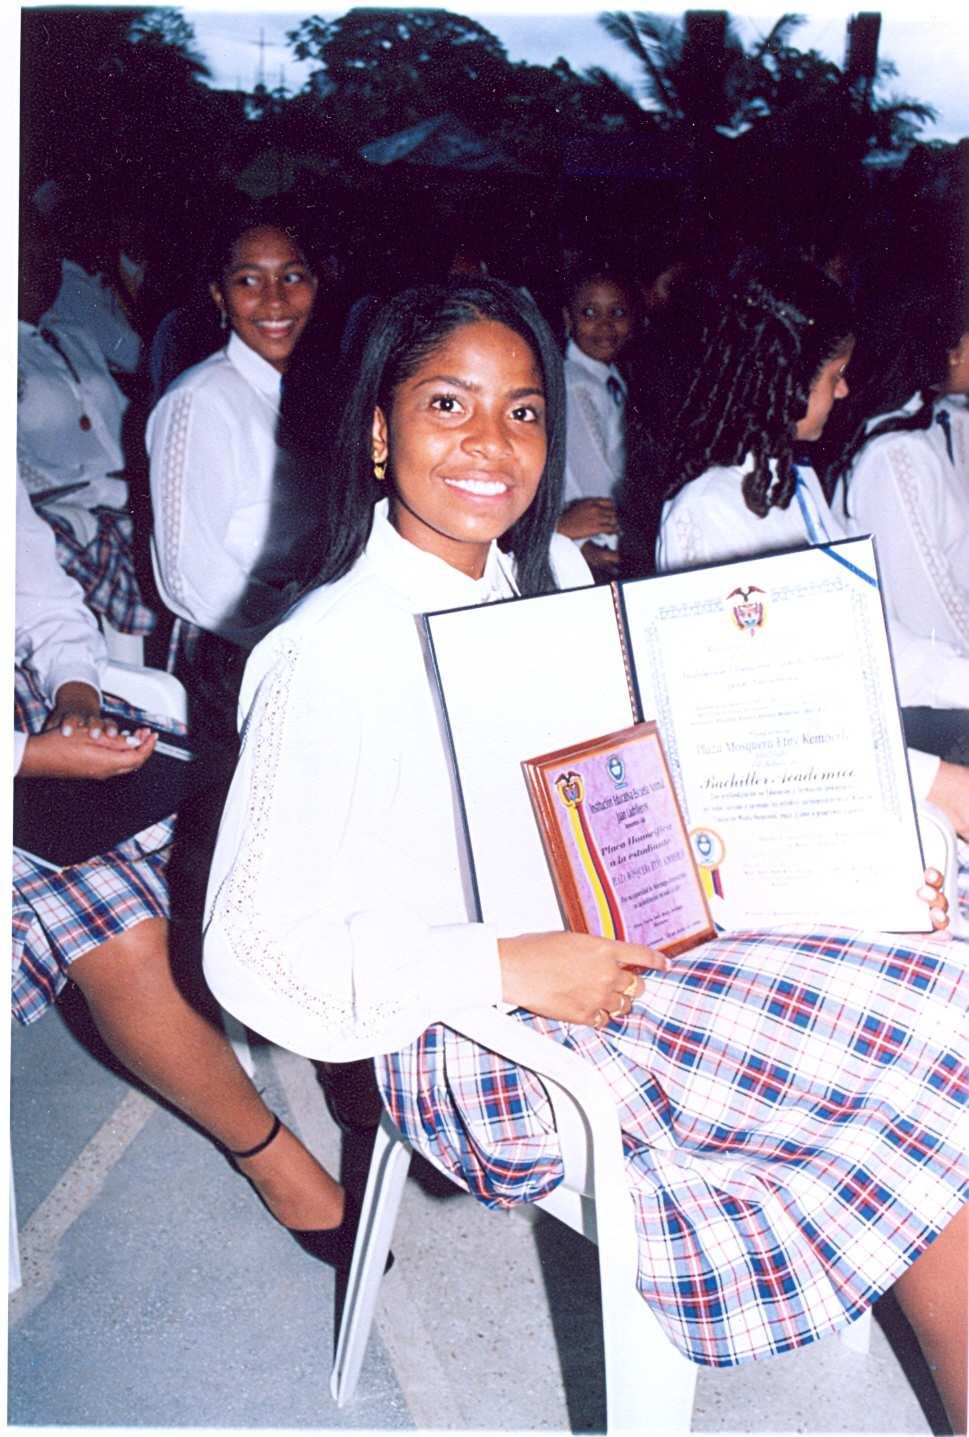 Questa ragazza insieme al diploma ha ricevuto un certificato di merito per aver ottenuto la votazione più